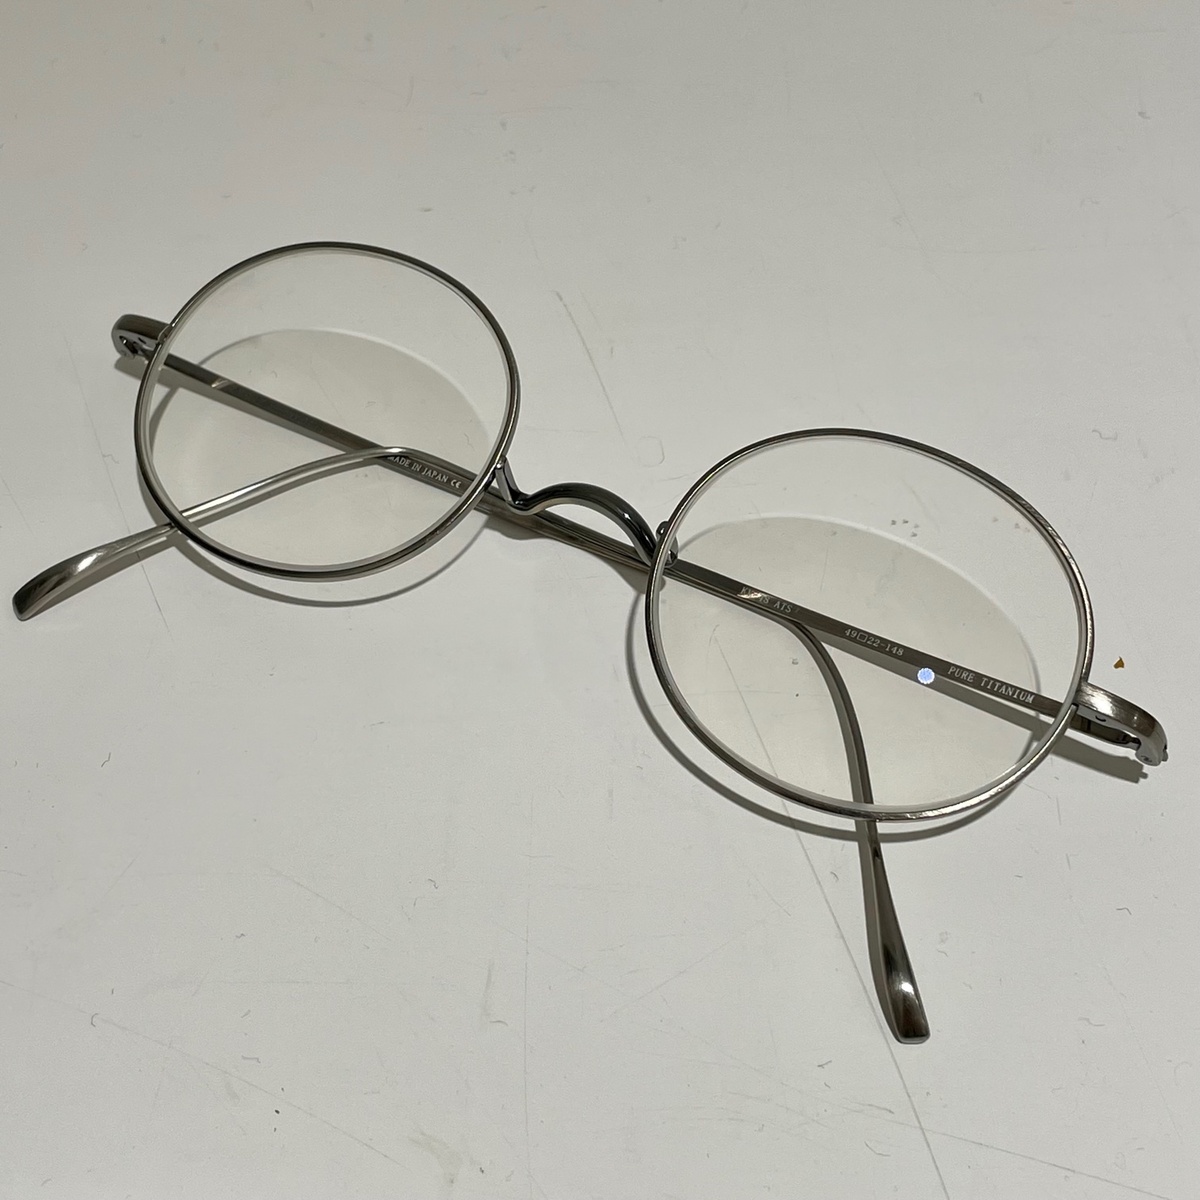 金子眼鏡のKV-48 ピュアチタニウム 眼鏡の買取実績です。